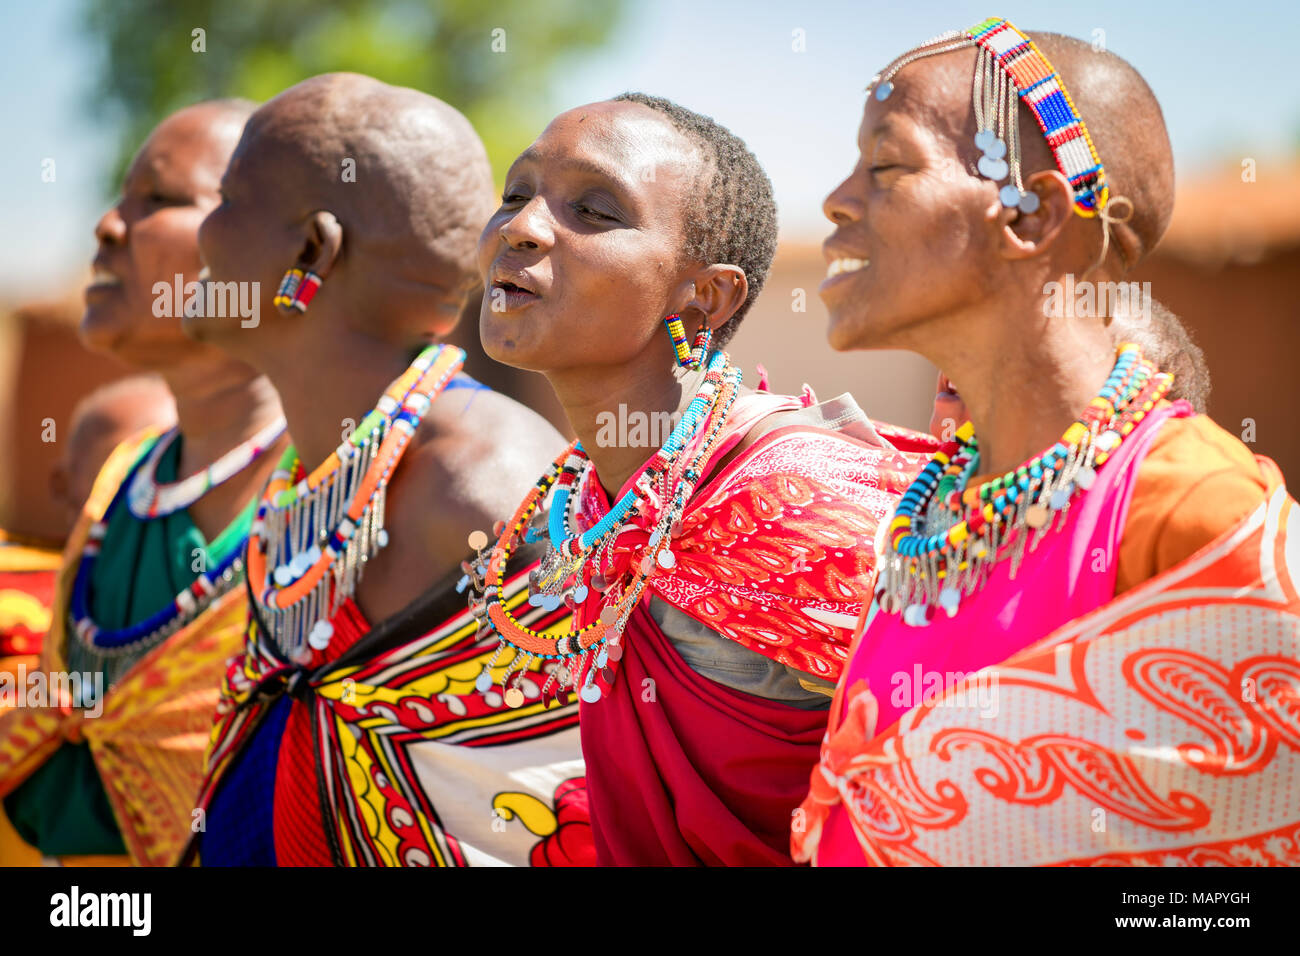 Africa, Kenya, Maasai Mara. A colorful display of fabrics and cloth of the  Maasai people at Olanana in the Maasai Mara Stock Photo - Alamy